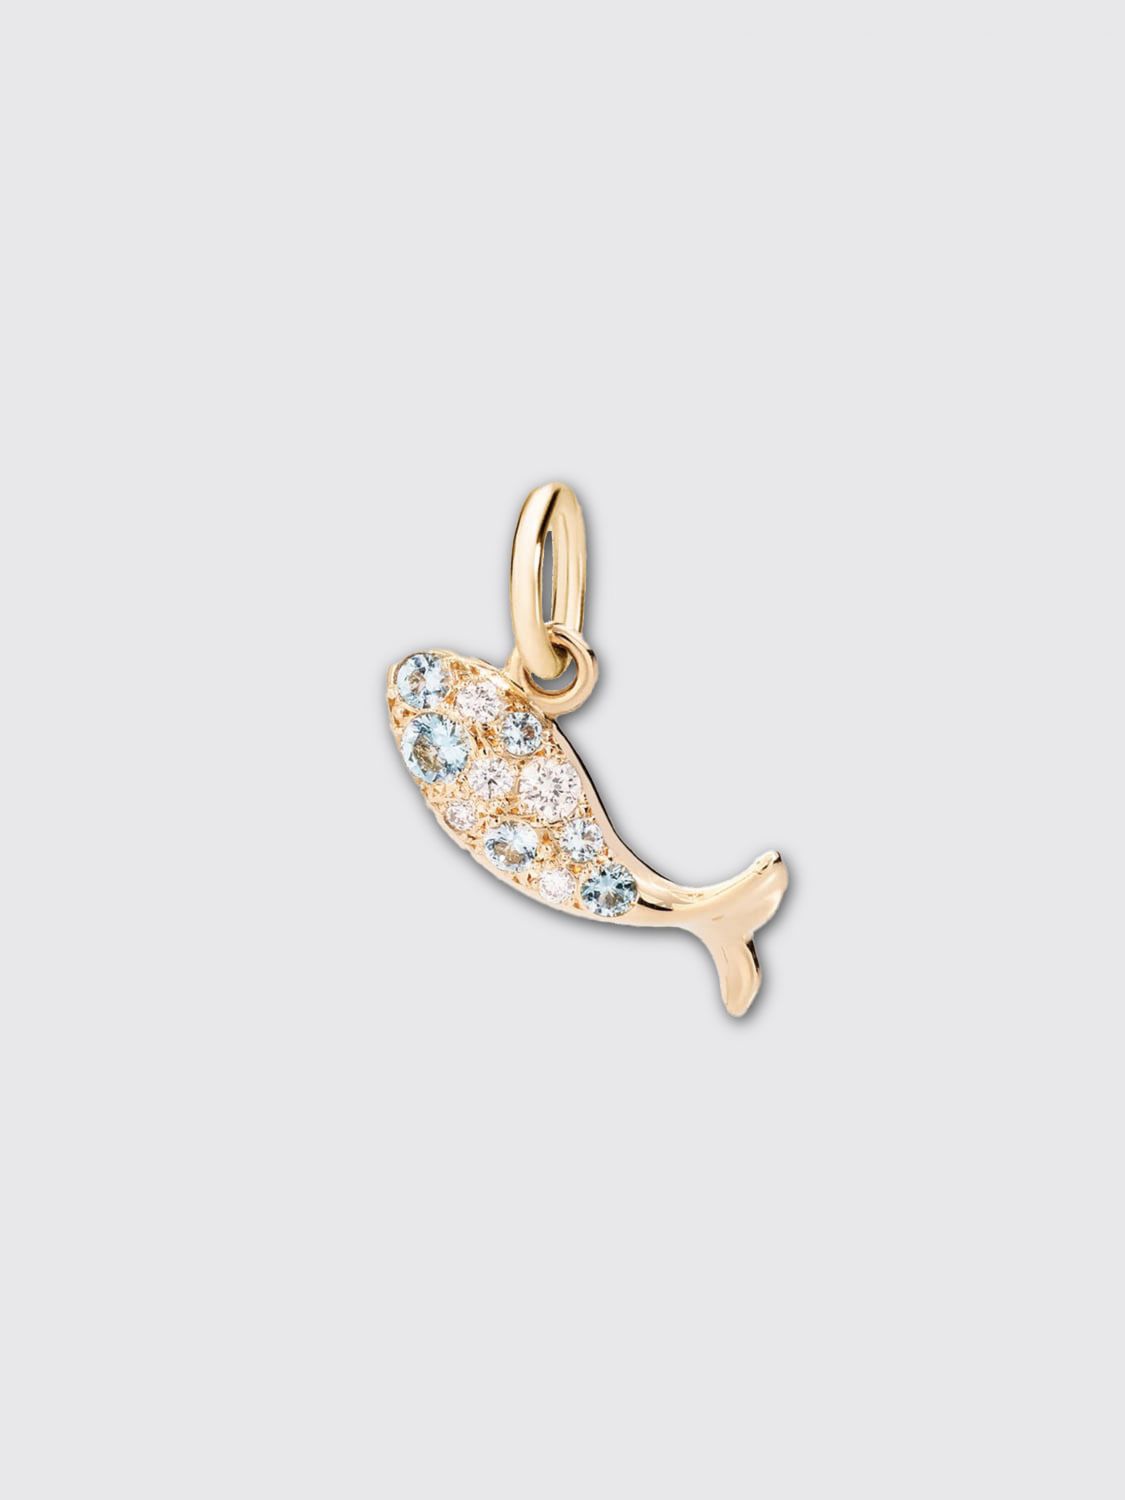 Gioielli Dodo: Ciondolo Pesce Dodo in oro giallo 18 kt e diamanti azzurro 1